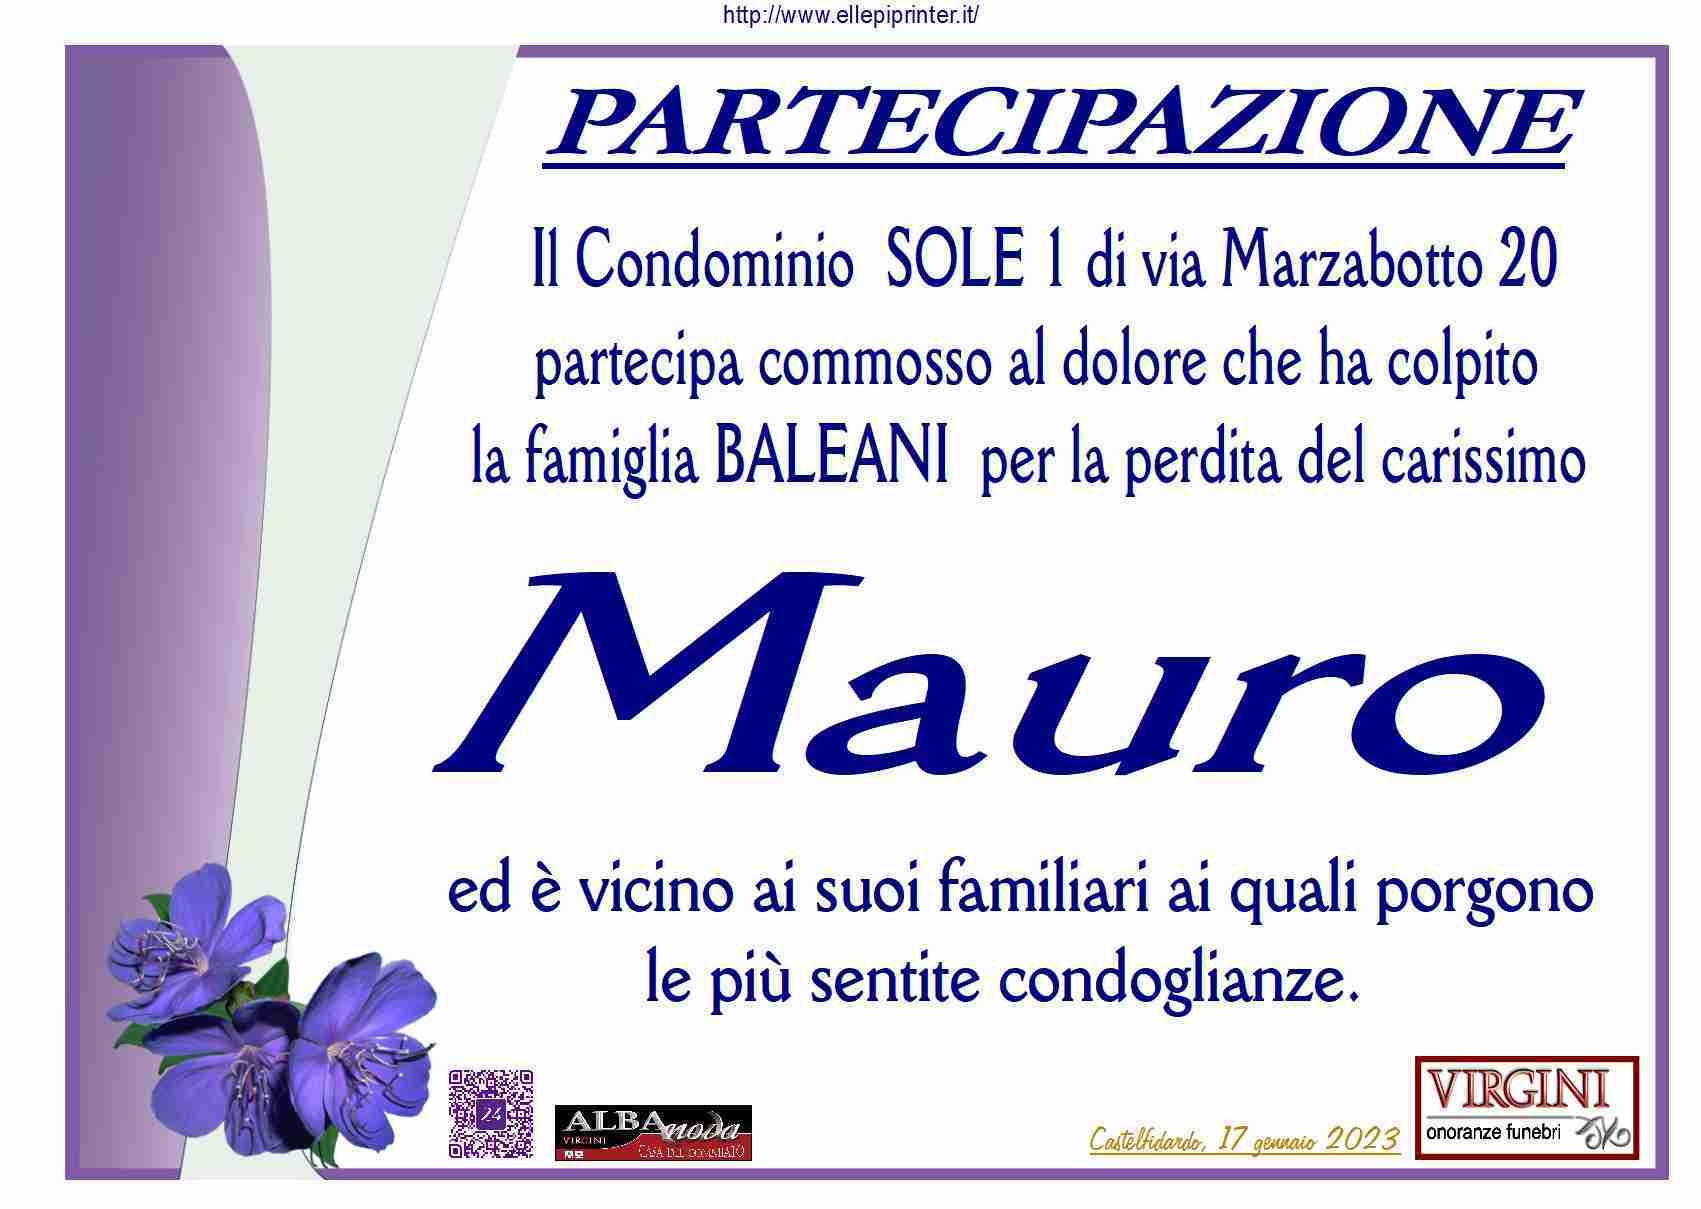 Mauro Baleani